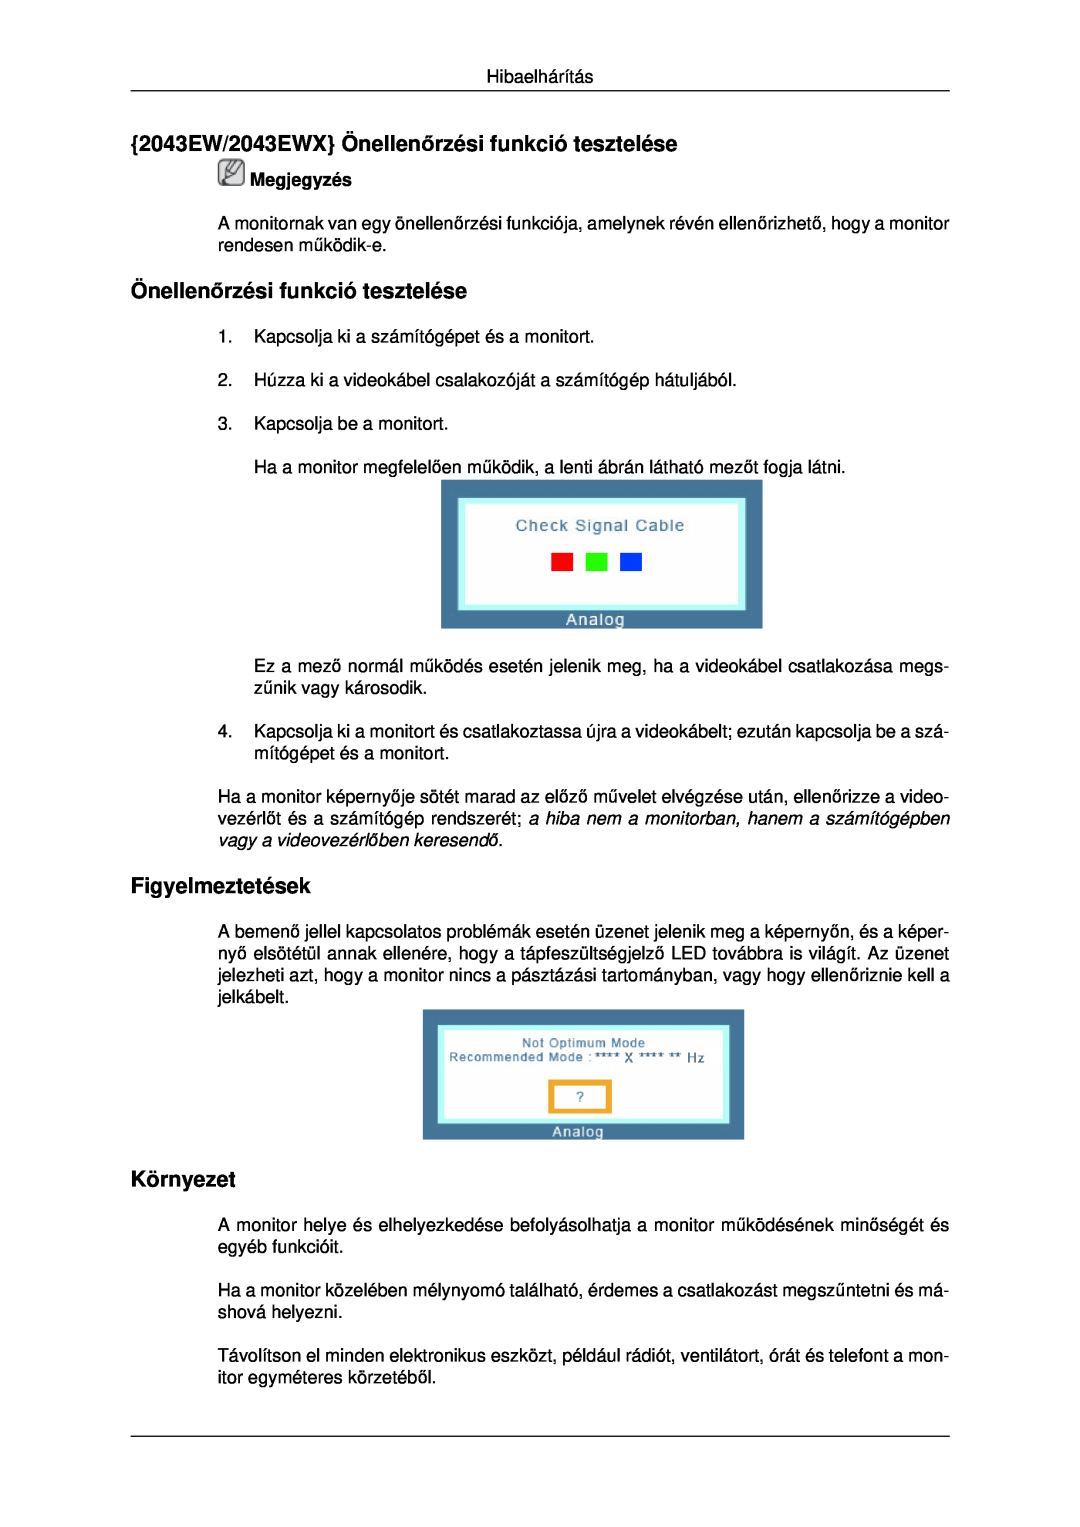 Samsung LS22MYDEBC/EDC manual 2043EW/2043EWX Önellenőrzési funkció tesztelése, Figyelmeztetések, Környezet, Megjegyzés 